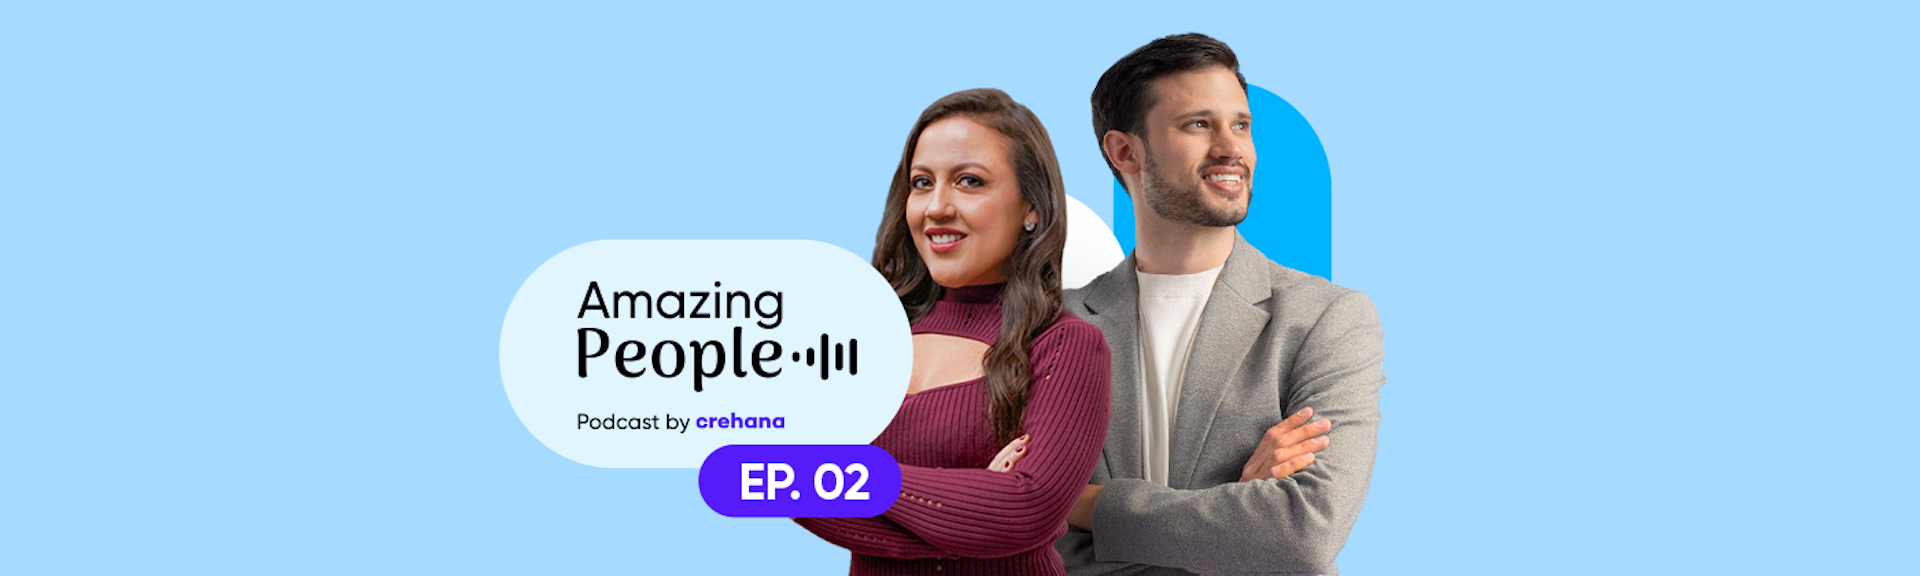 ¿Cómo crear una cultura de equipos alrededor del mundo? Descúbrelo en el segundo episodio de nuestro Amazing People Podcast